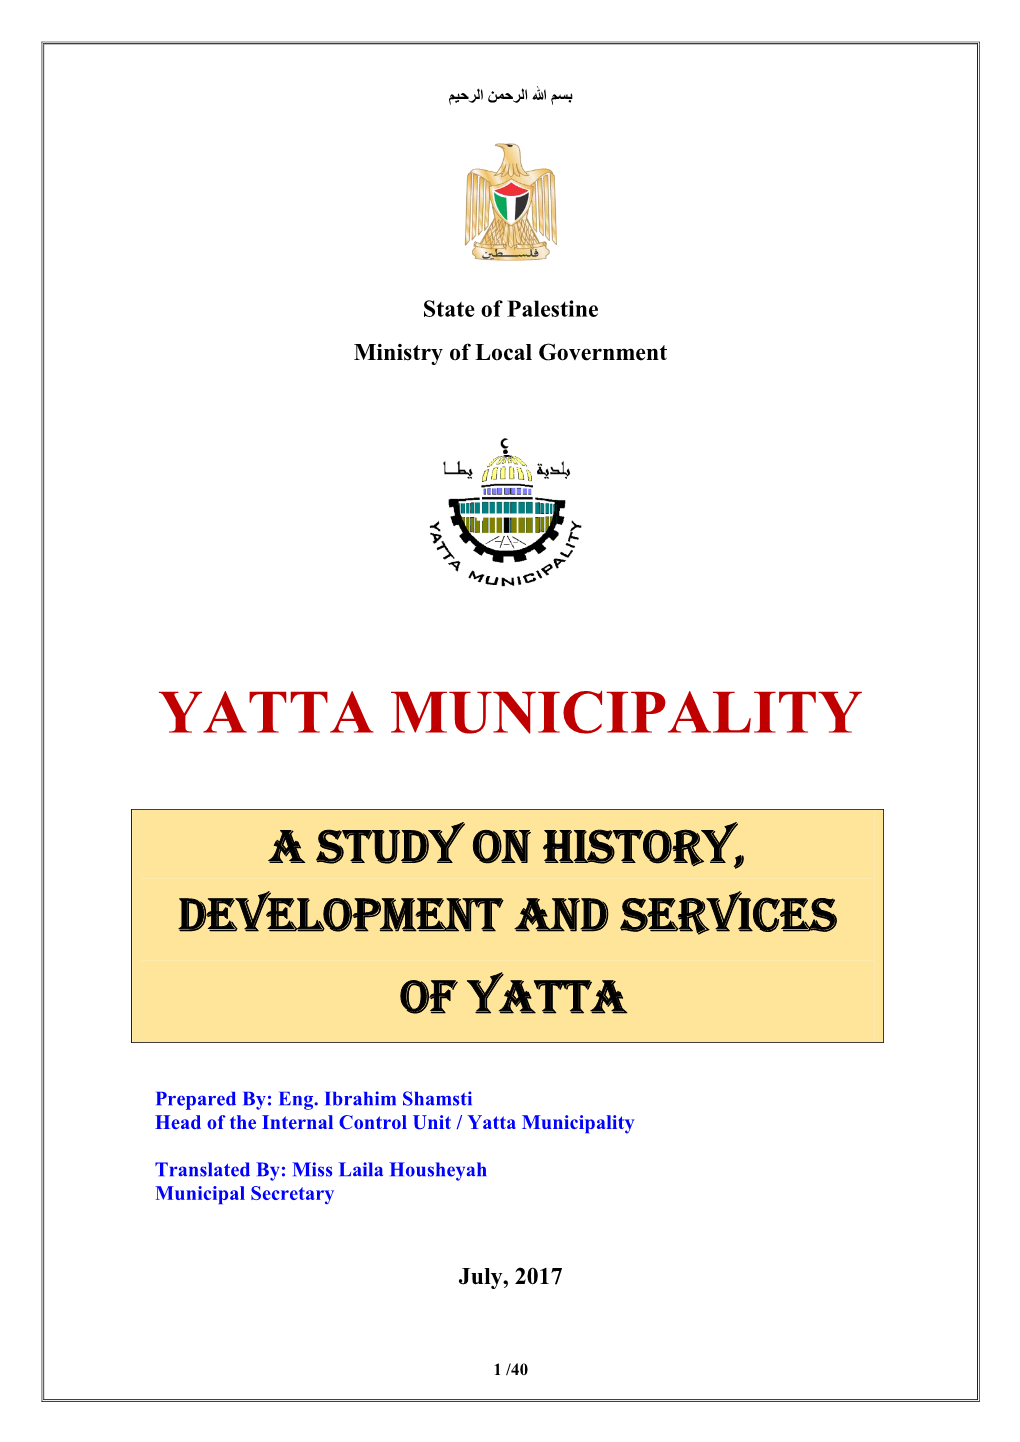 Yatta Municipality